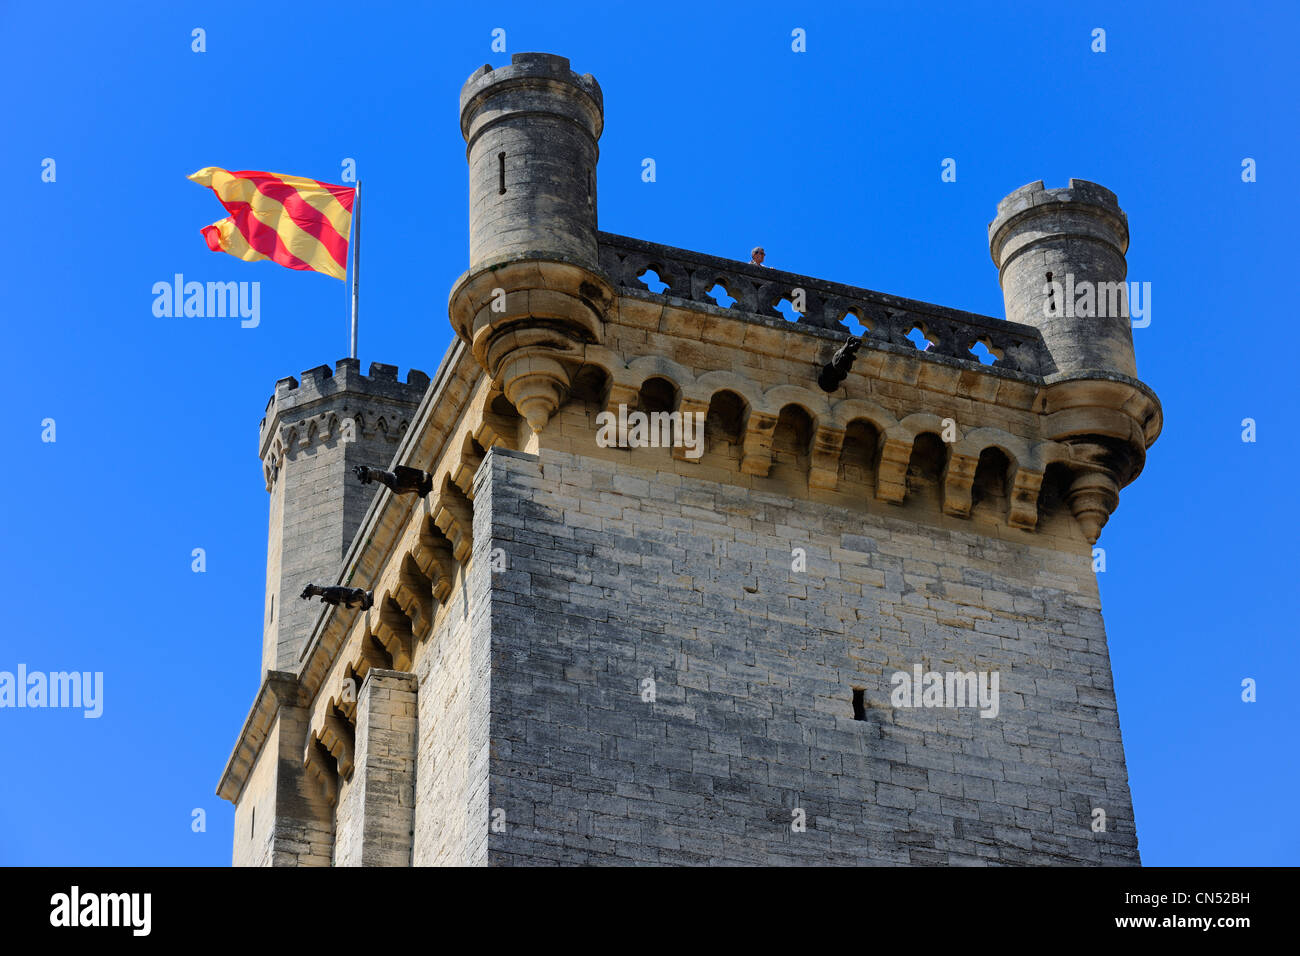 France, Gard, Pays d'Uzege, Uzes, Duke's castle called the Duche d'Uzes, the Bermonde Tower Stock Photo